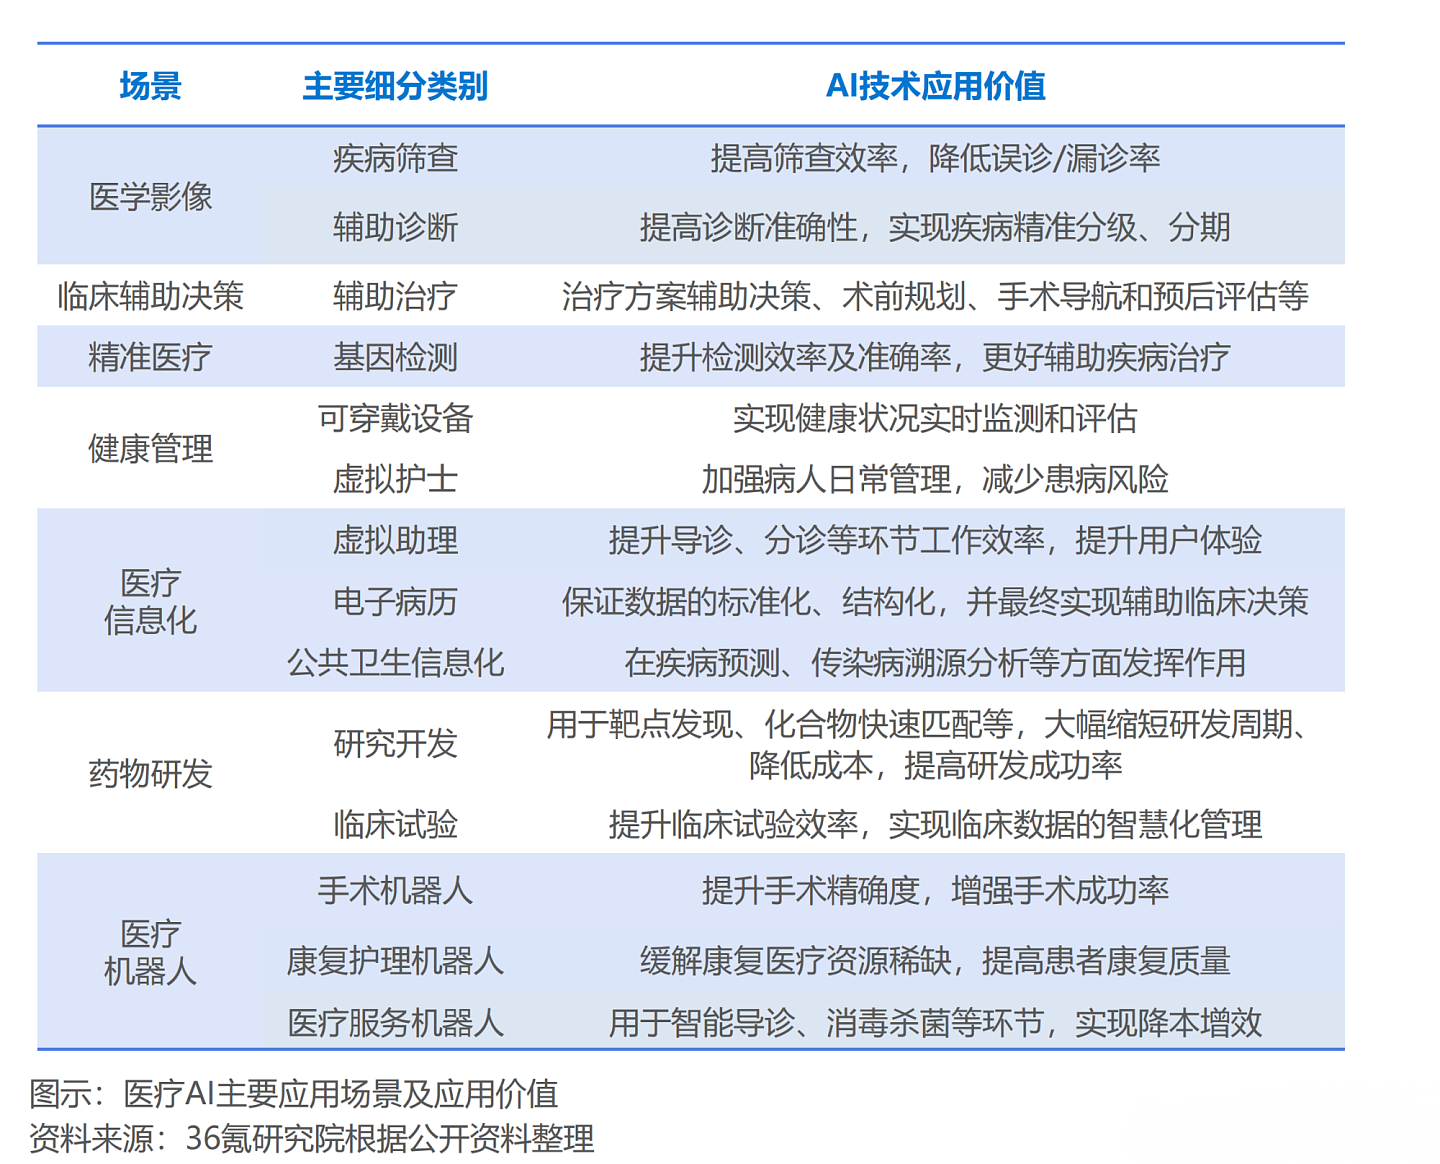 36氪研究院 | 2021年中国医疗AI行业研究报告 - 1